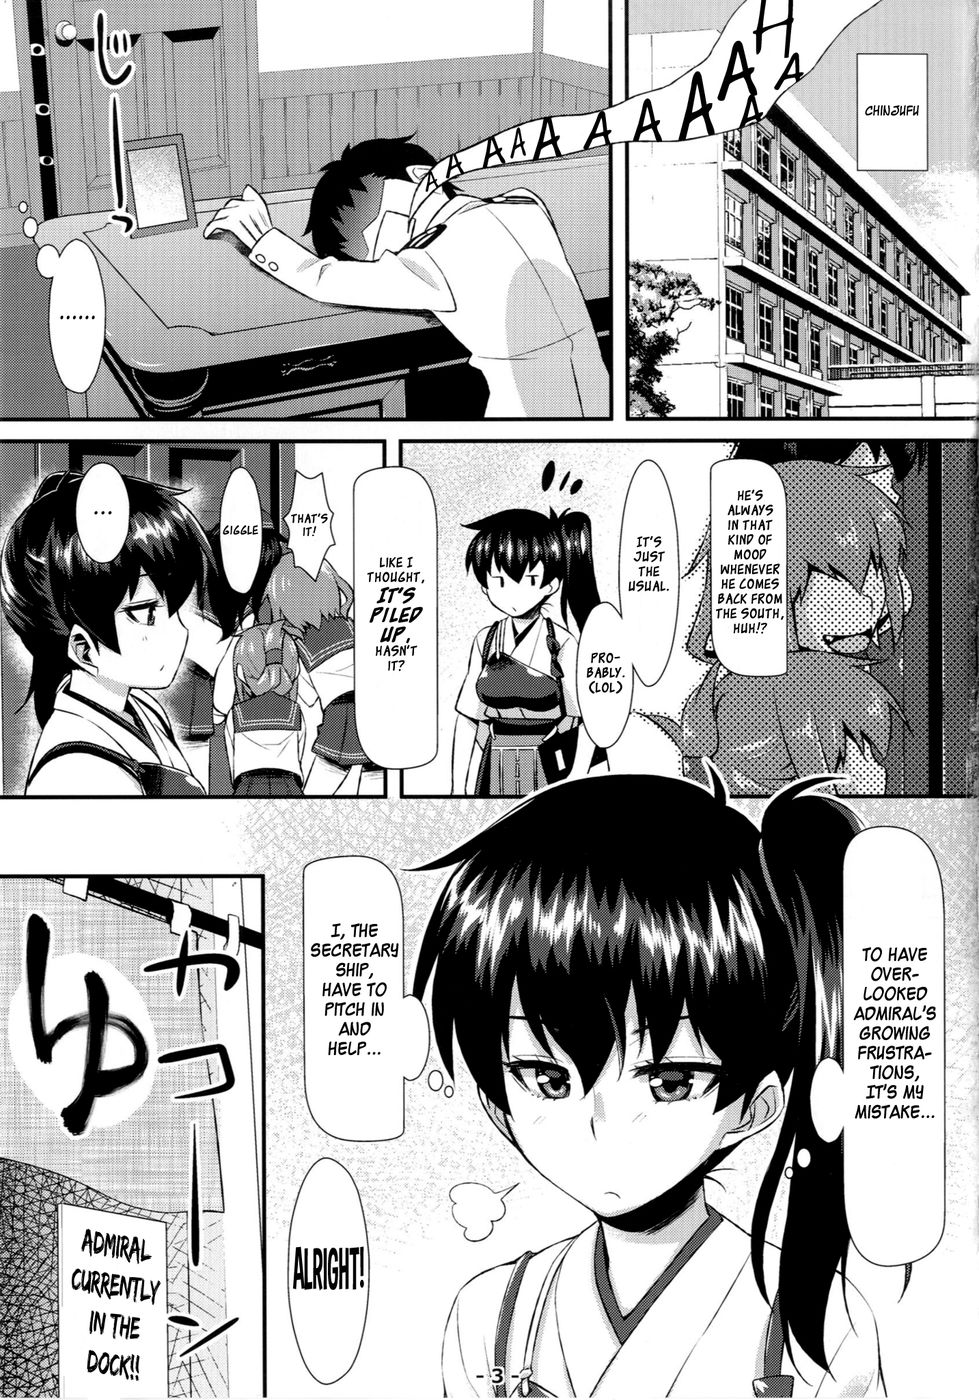 Hentai Manga Comic-Kaga Soap-Read-3